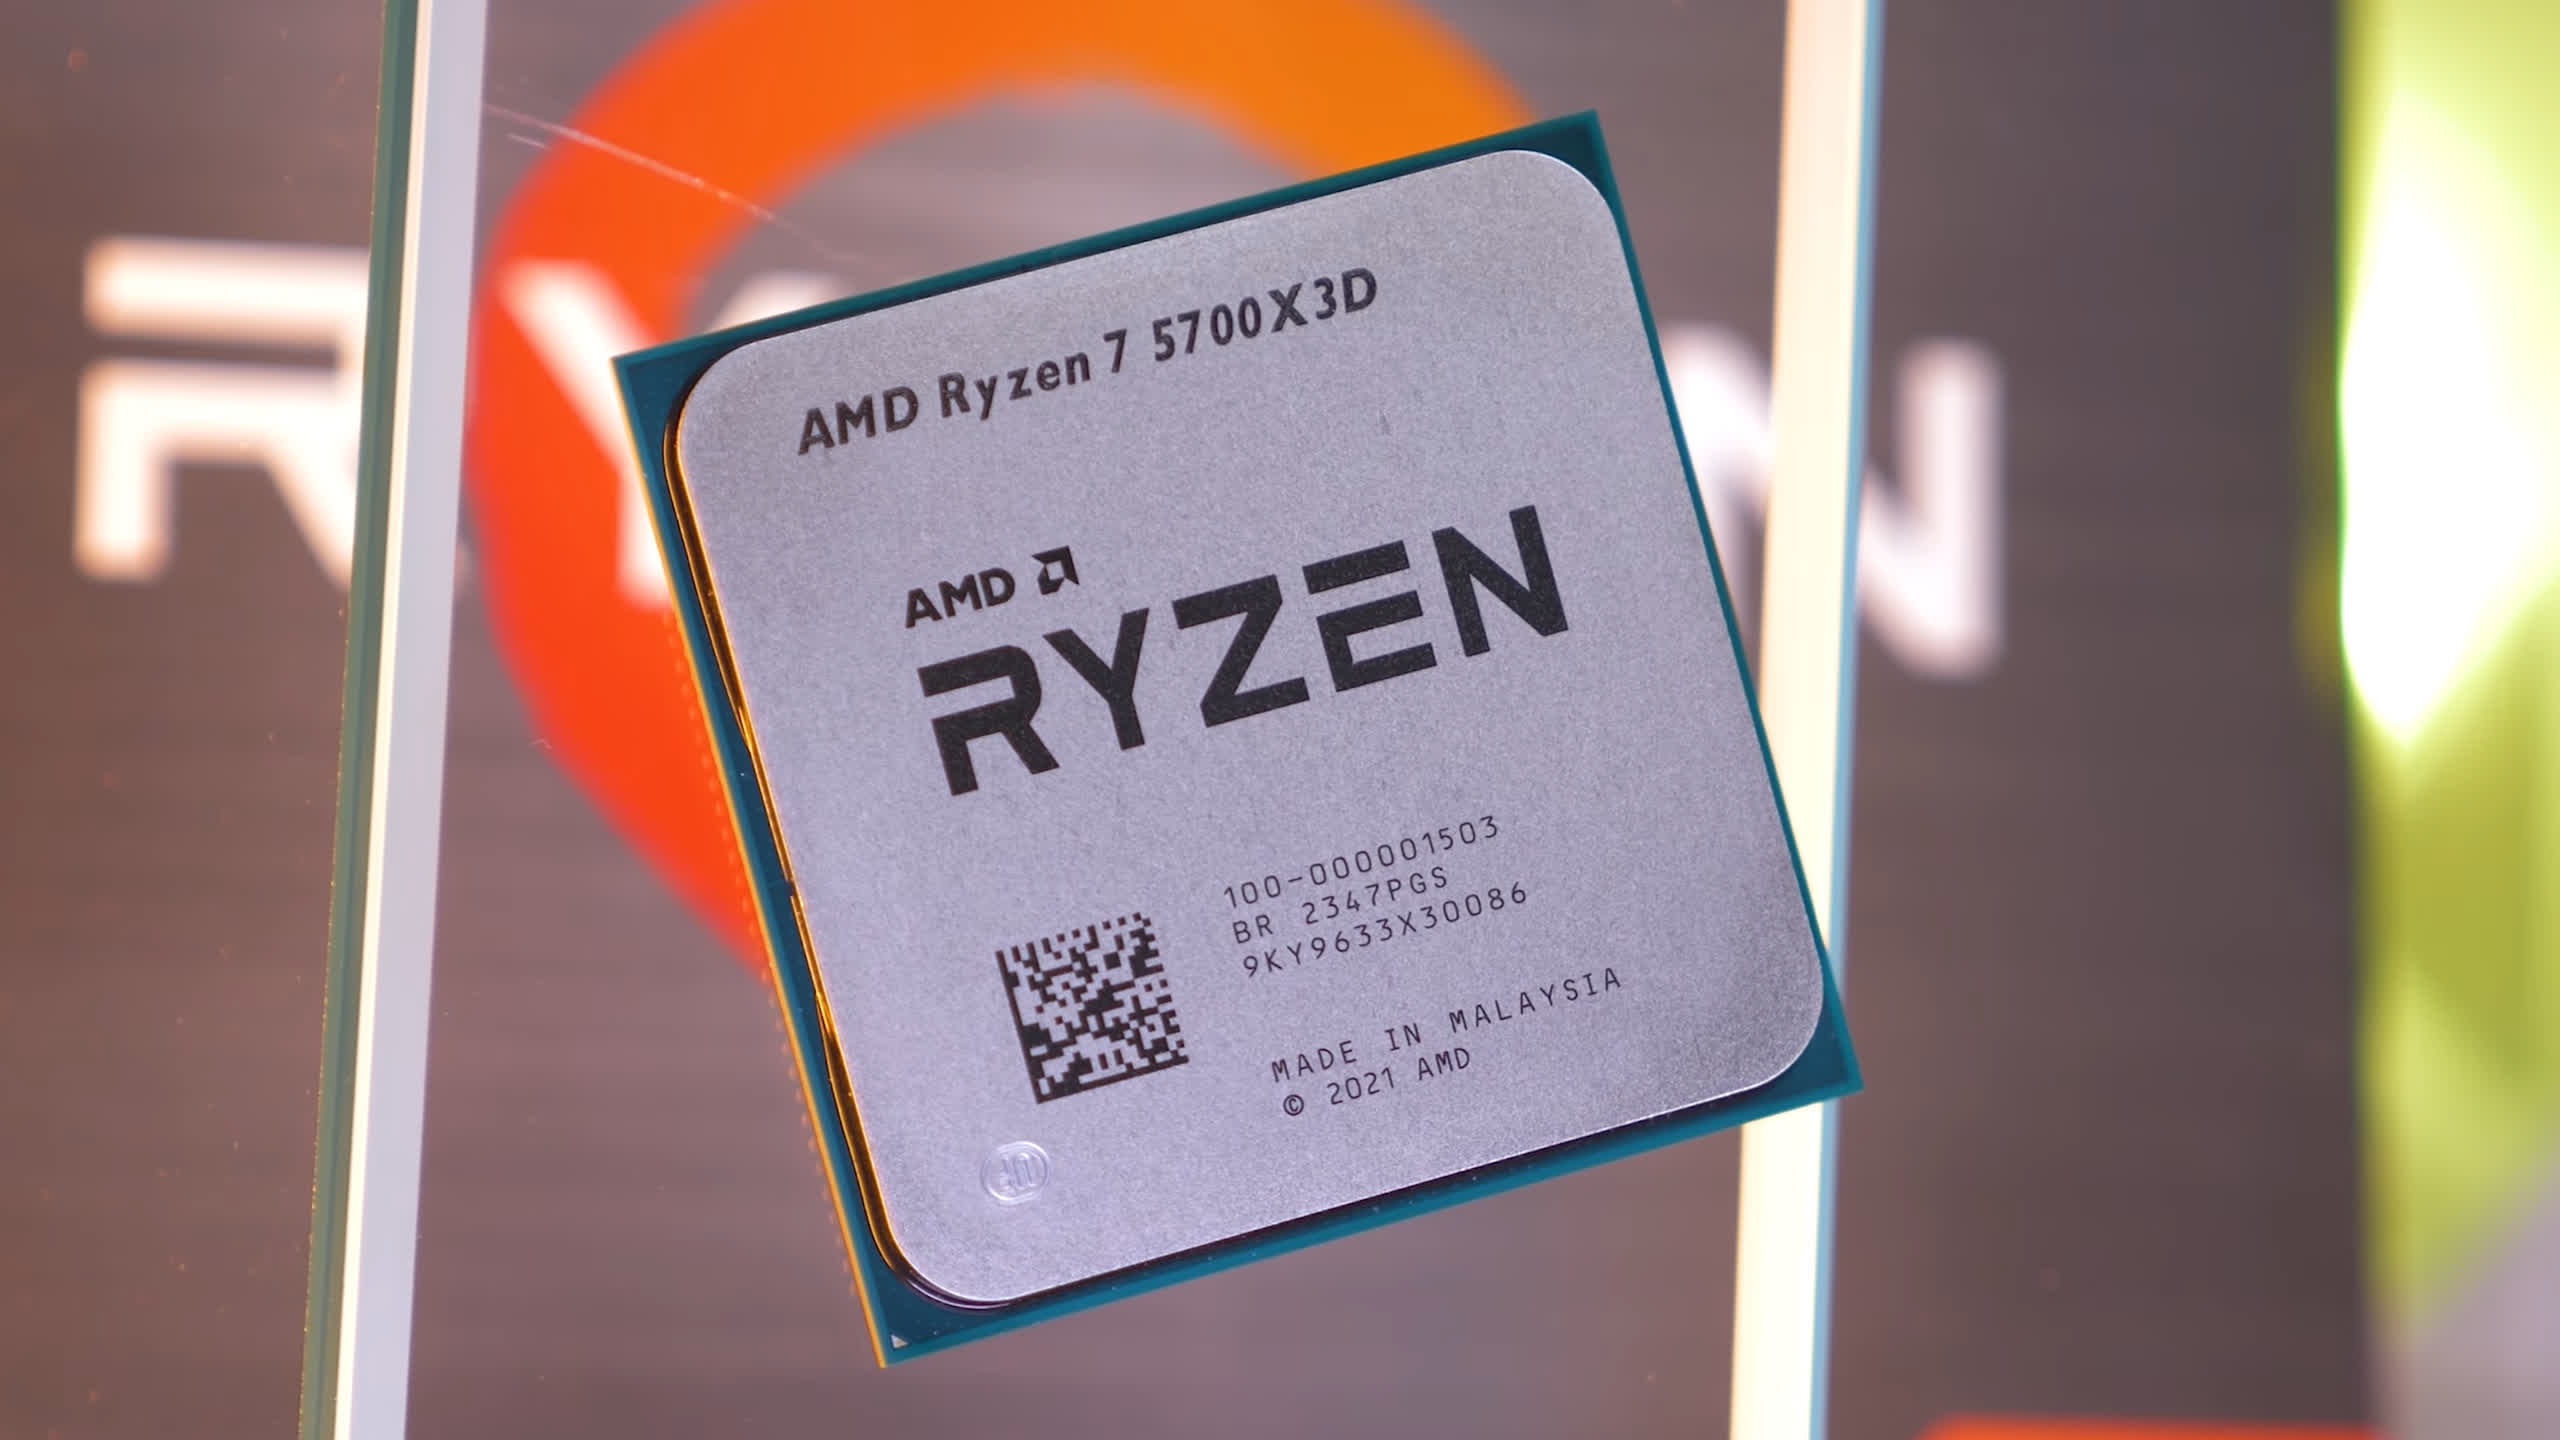 Reseñas, ventajas y desventajas de AMD Ryzen 7 5700X3D